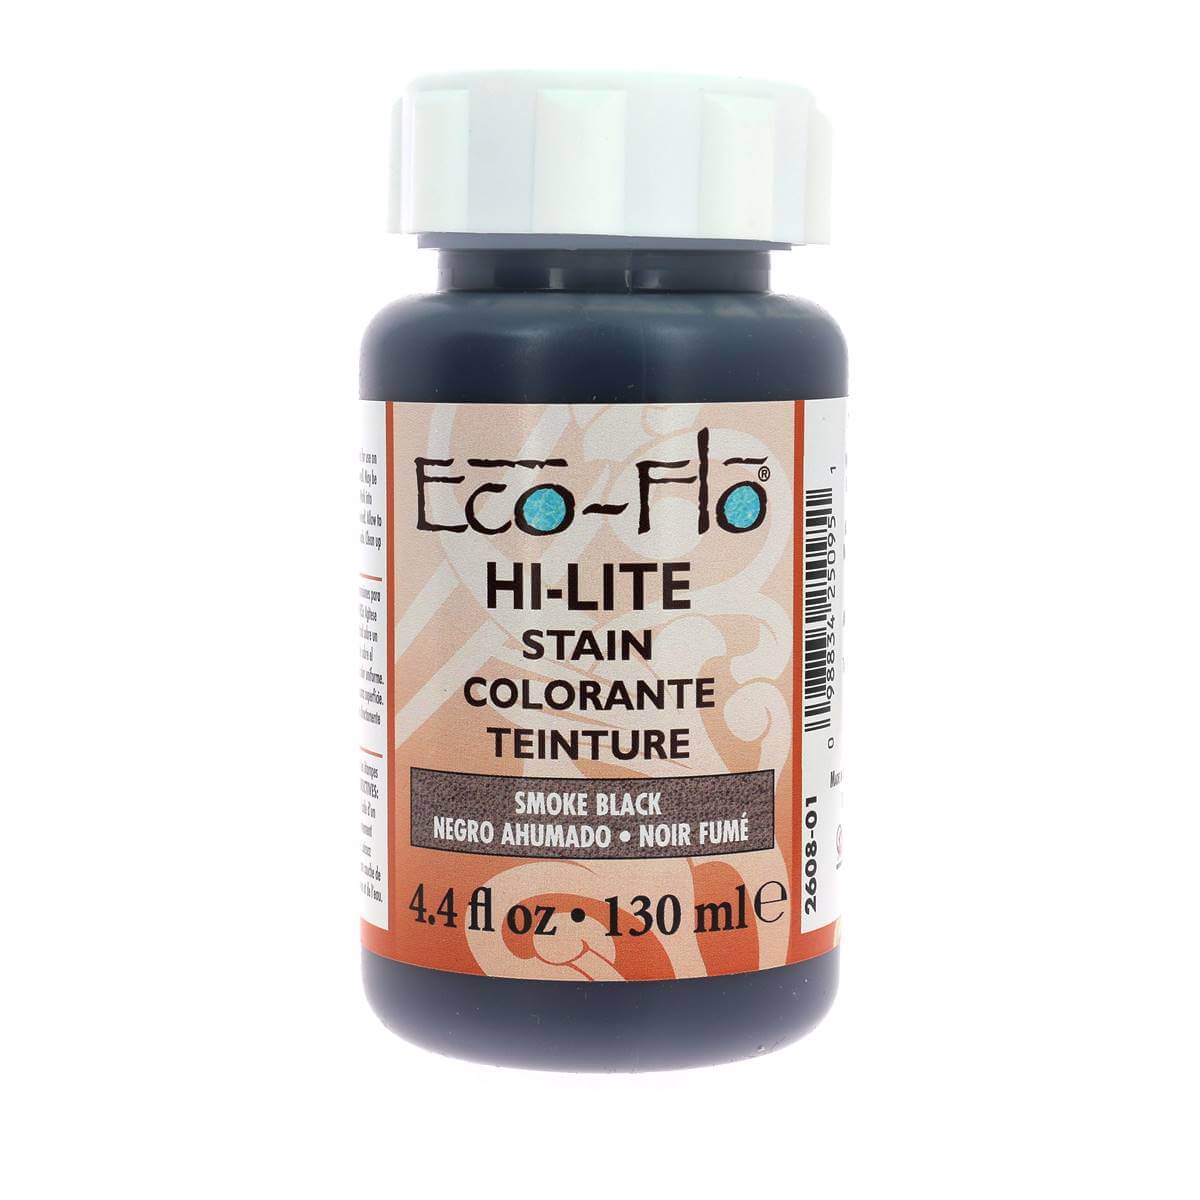 Teinture pour repoussage Hi-Lite - Eco-Flo - 130ml